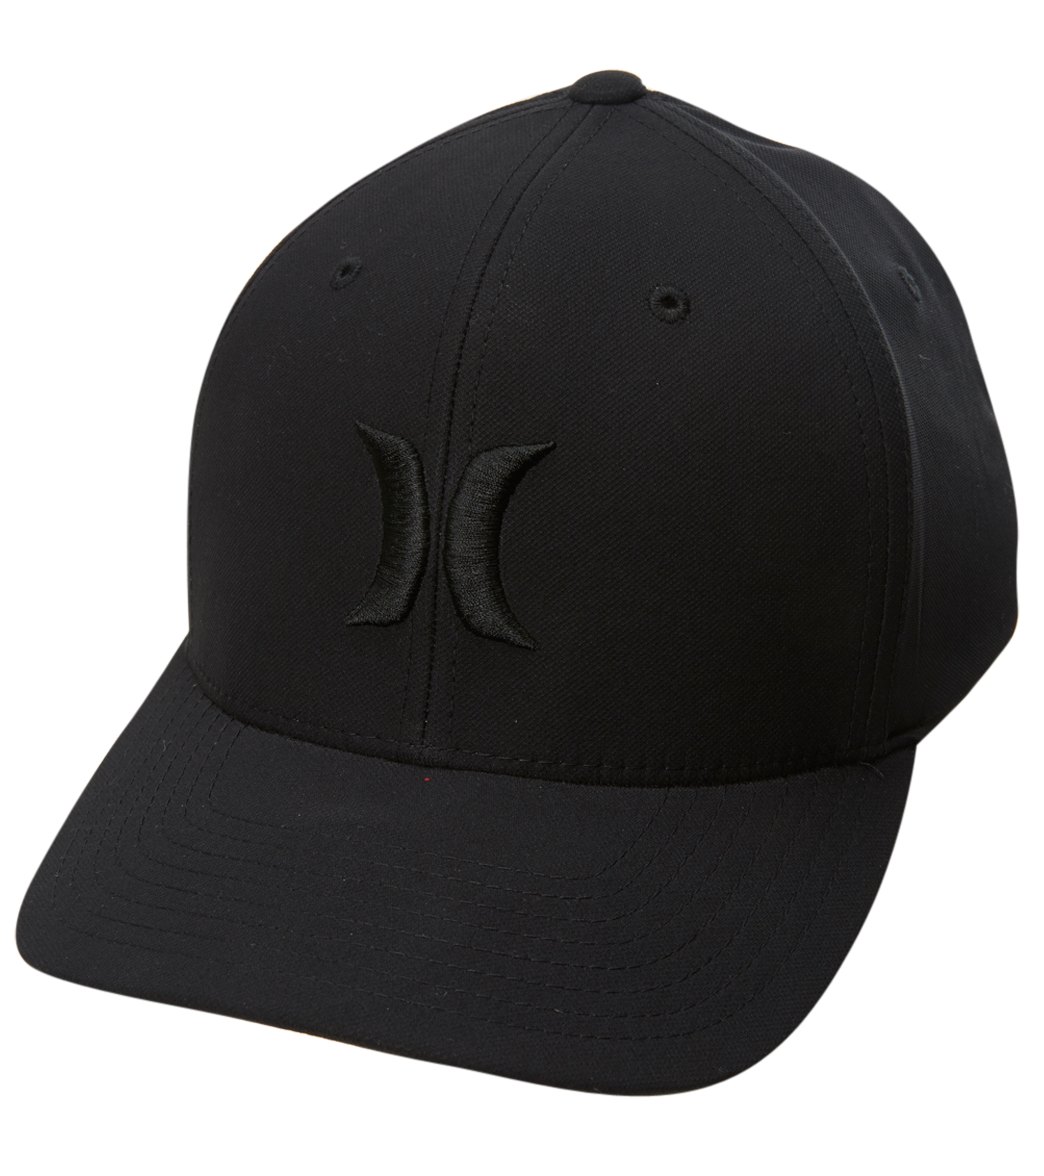 Hurley Men's H20-Dri One & Only Hat - Black/Black Large/Xl Cotton/Spandex - Swimoutlet.com